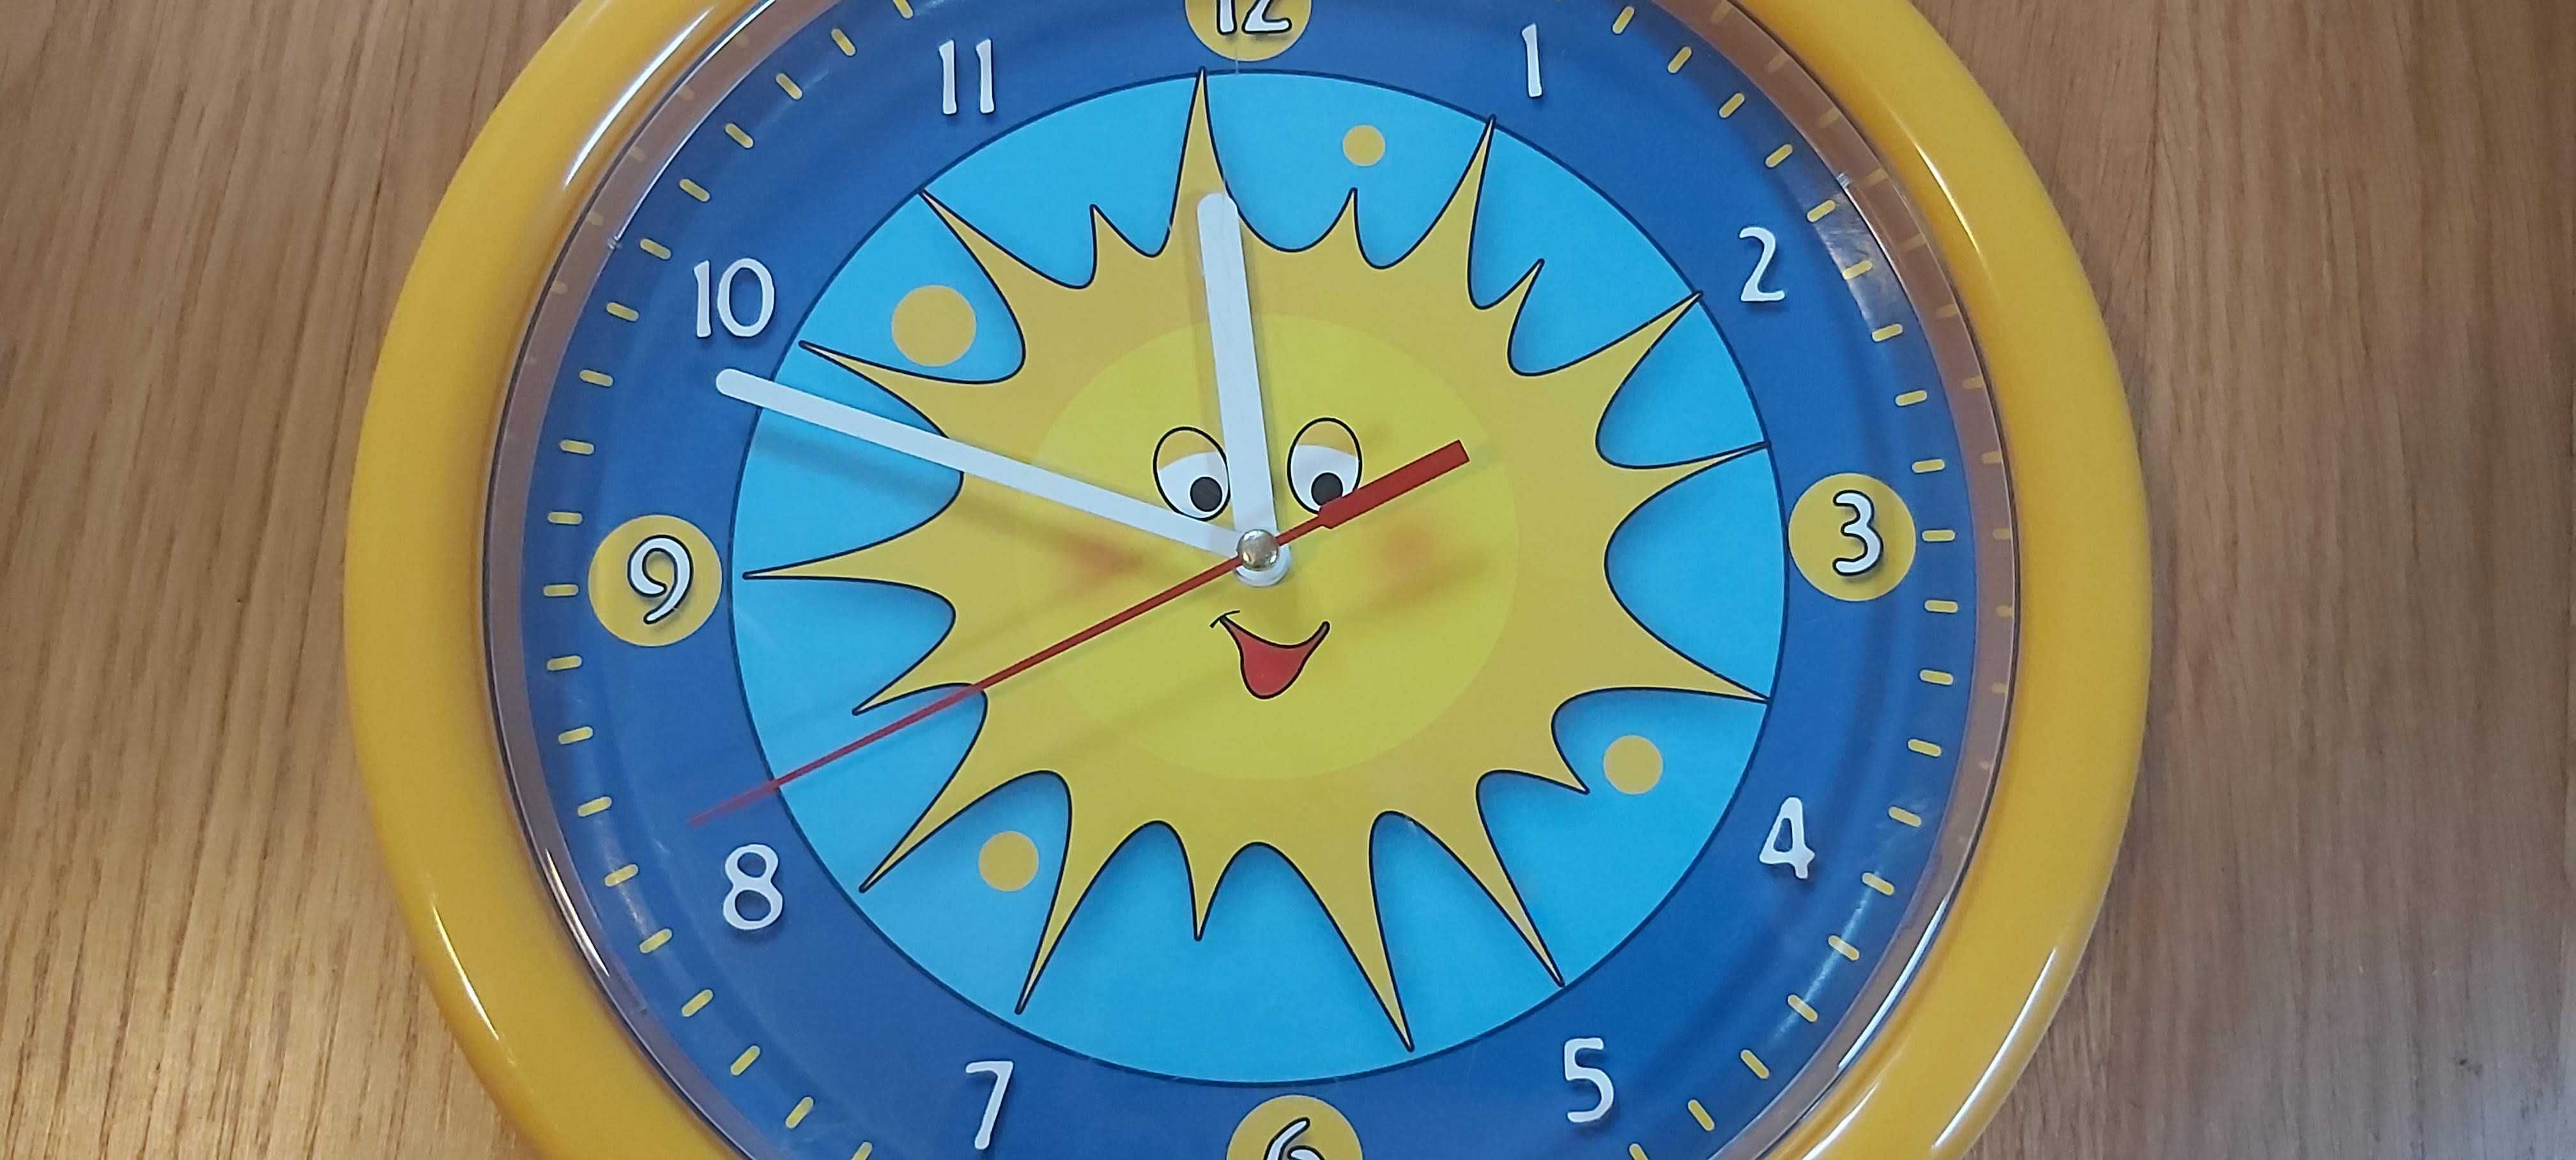 Zegar słoneczko dla dzieci. Stan bardzo dobry.